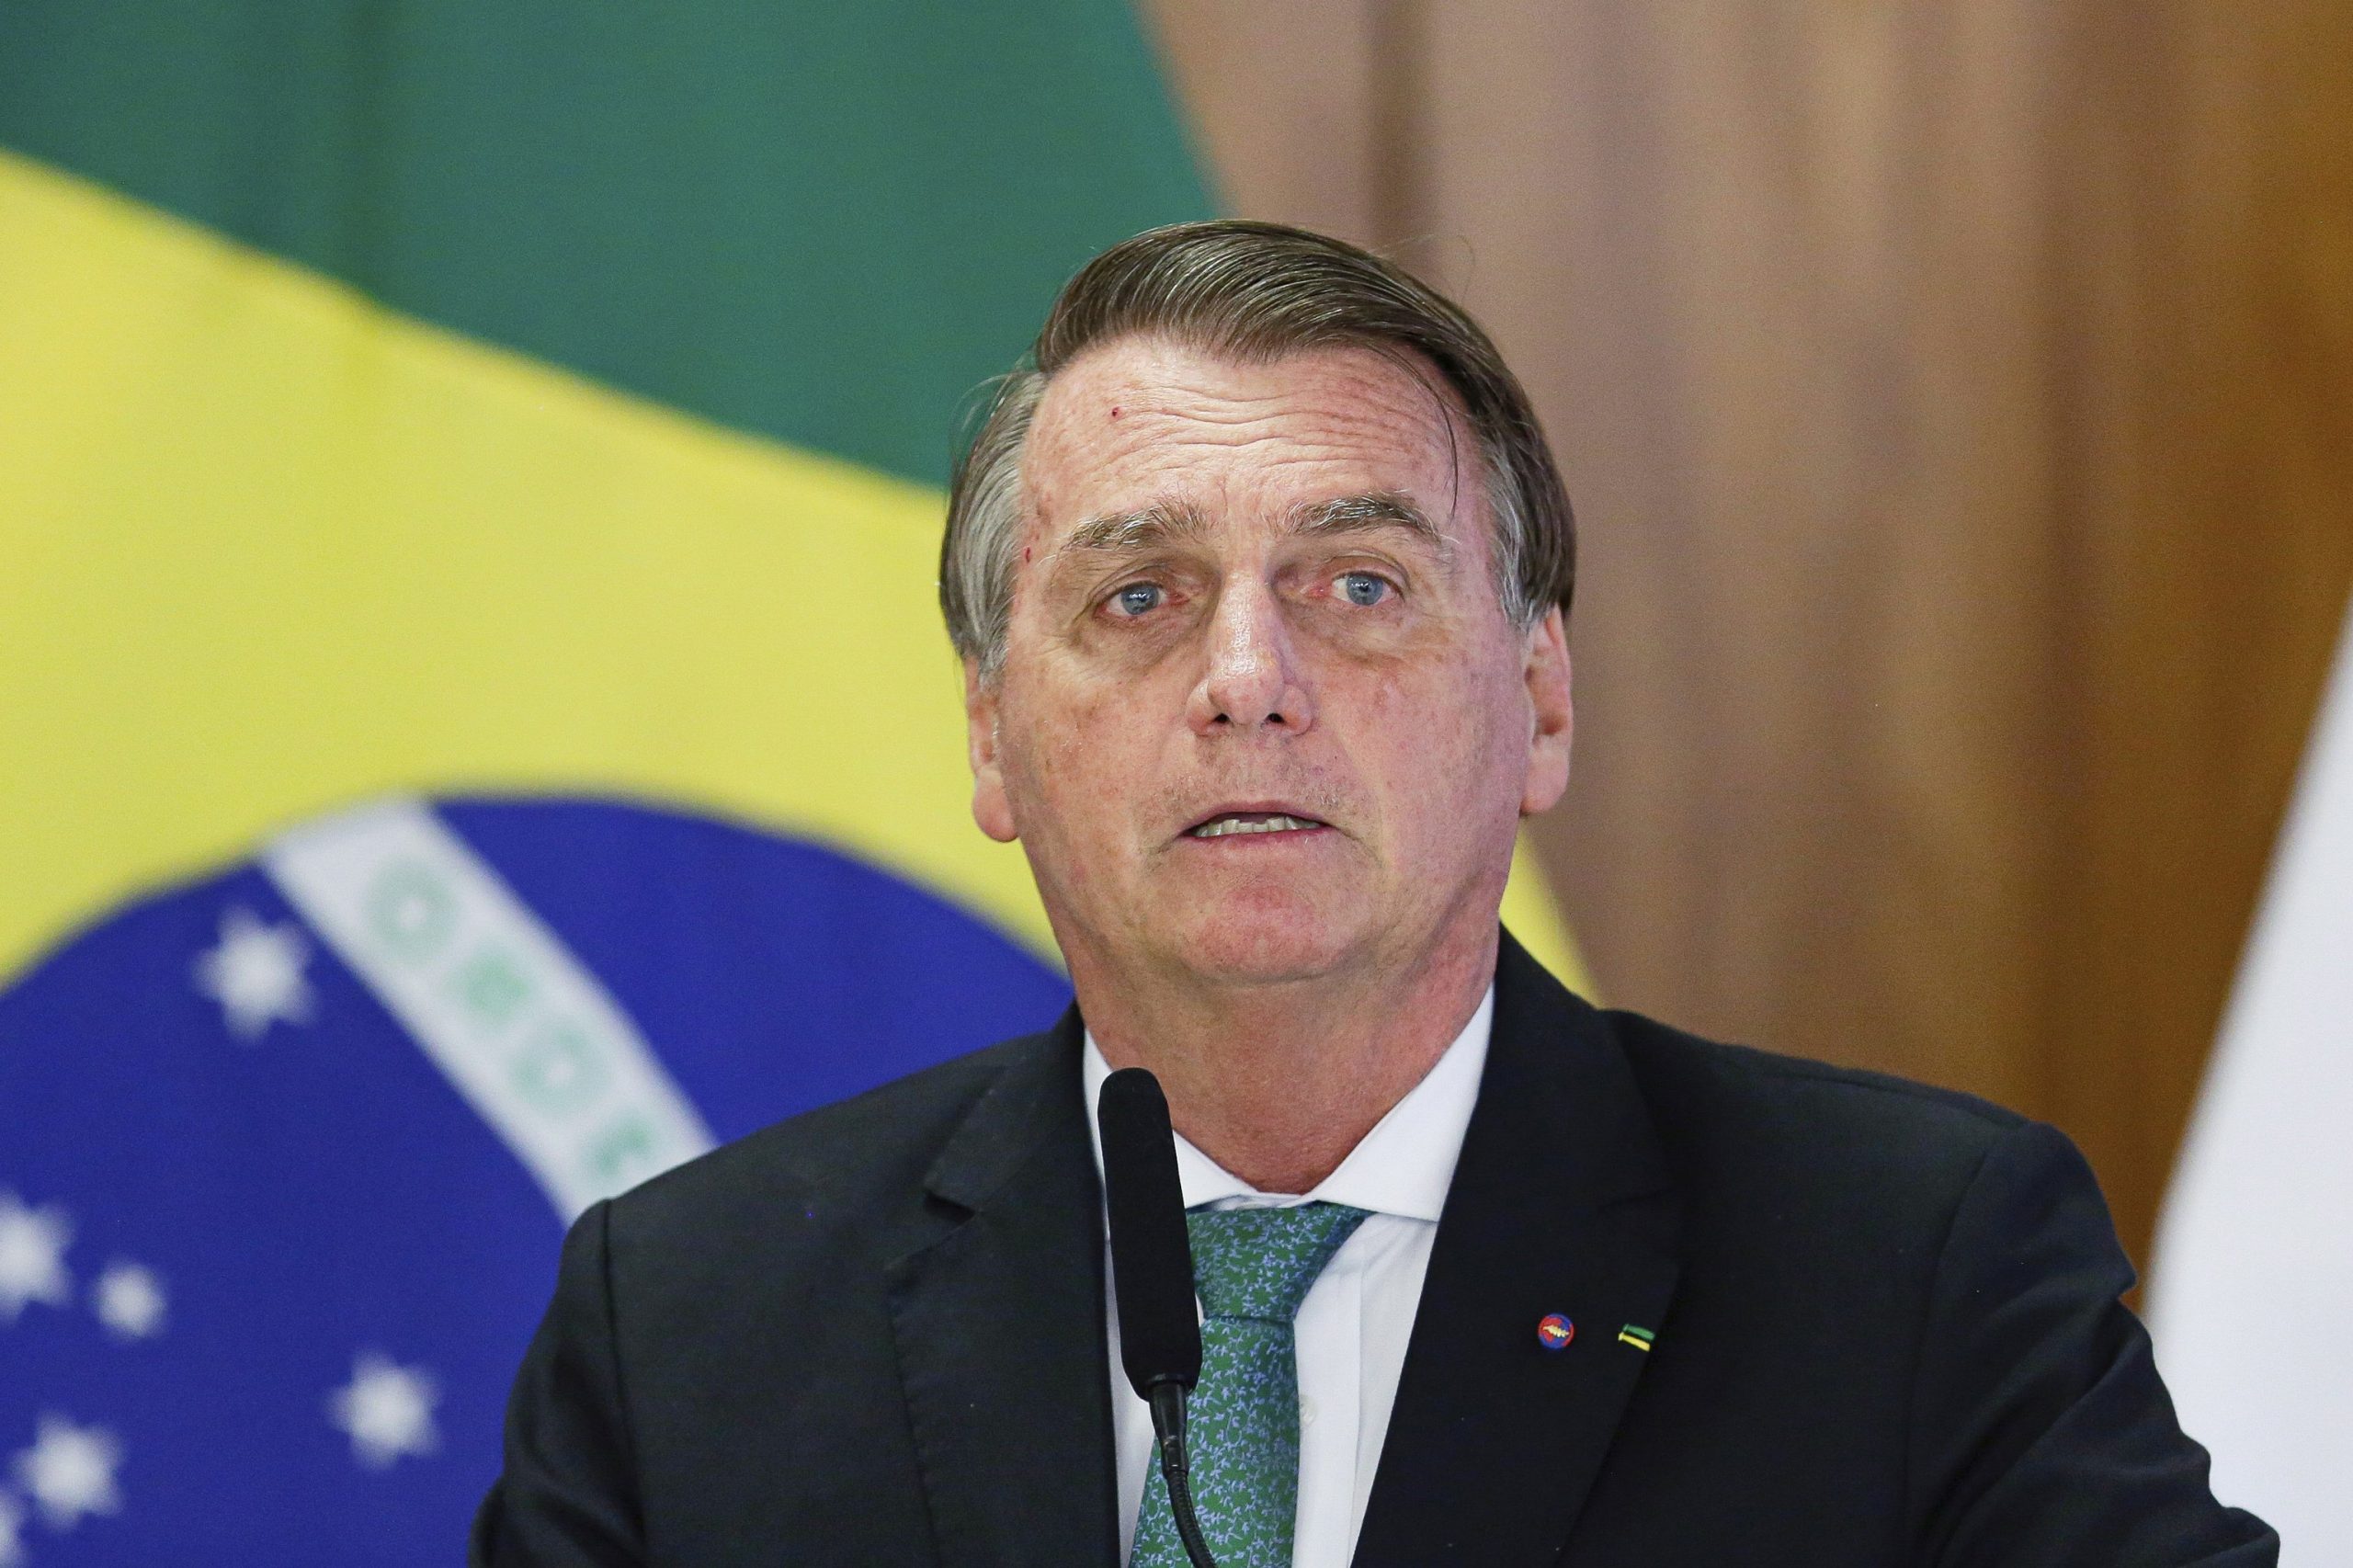 Bolsonaro cambiará al menos ocho ministros por postulaciones a elecciones generales